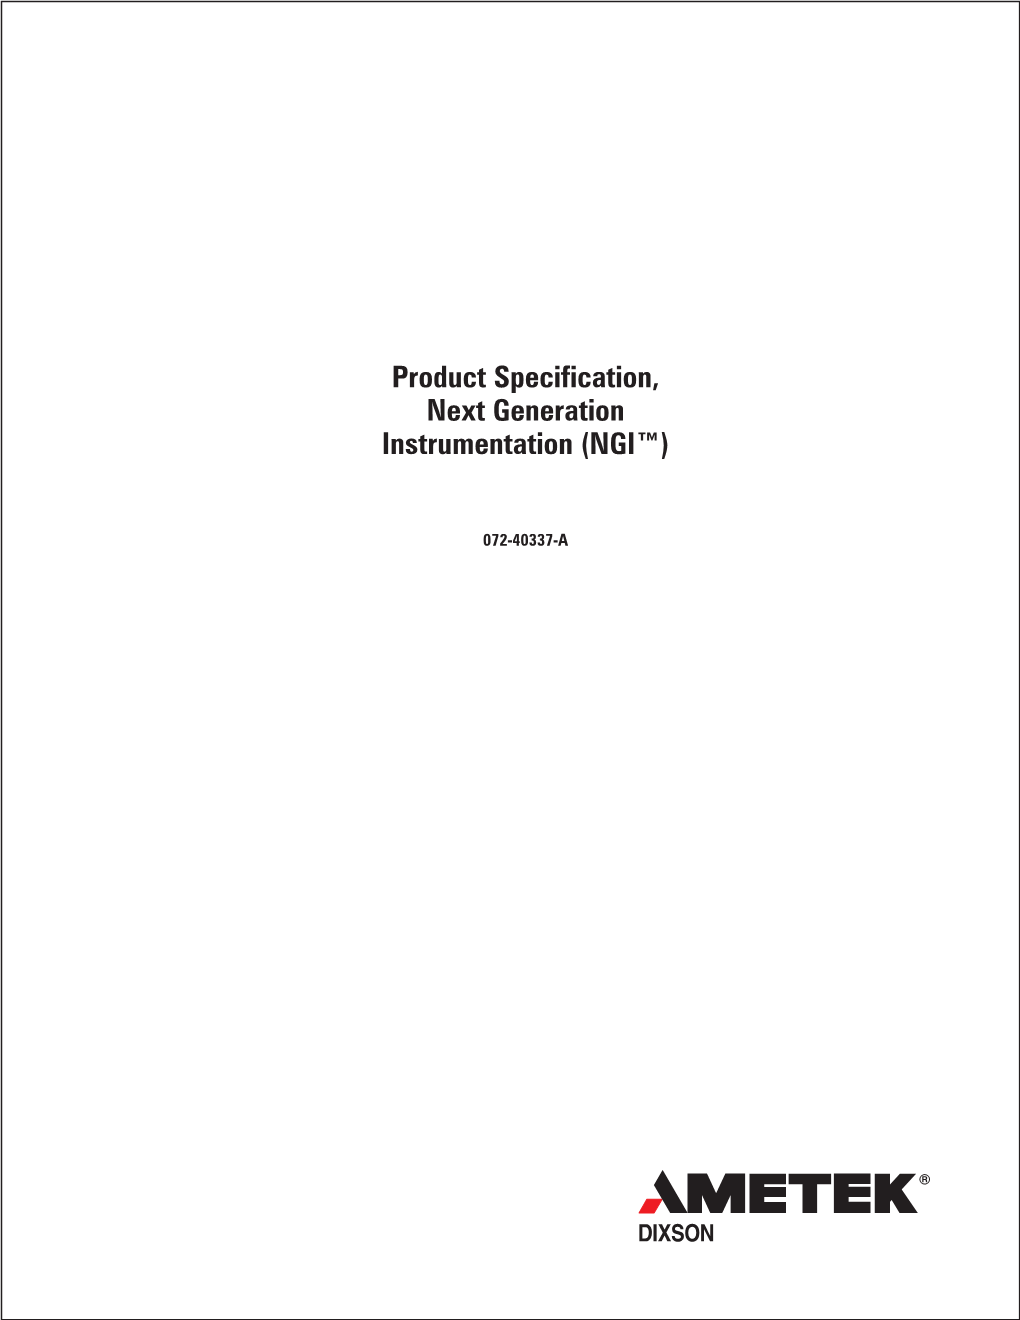 Product Specification, Next Generation Instrumentation (NGI™)